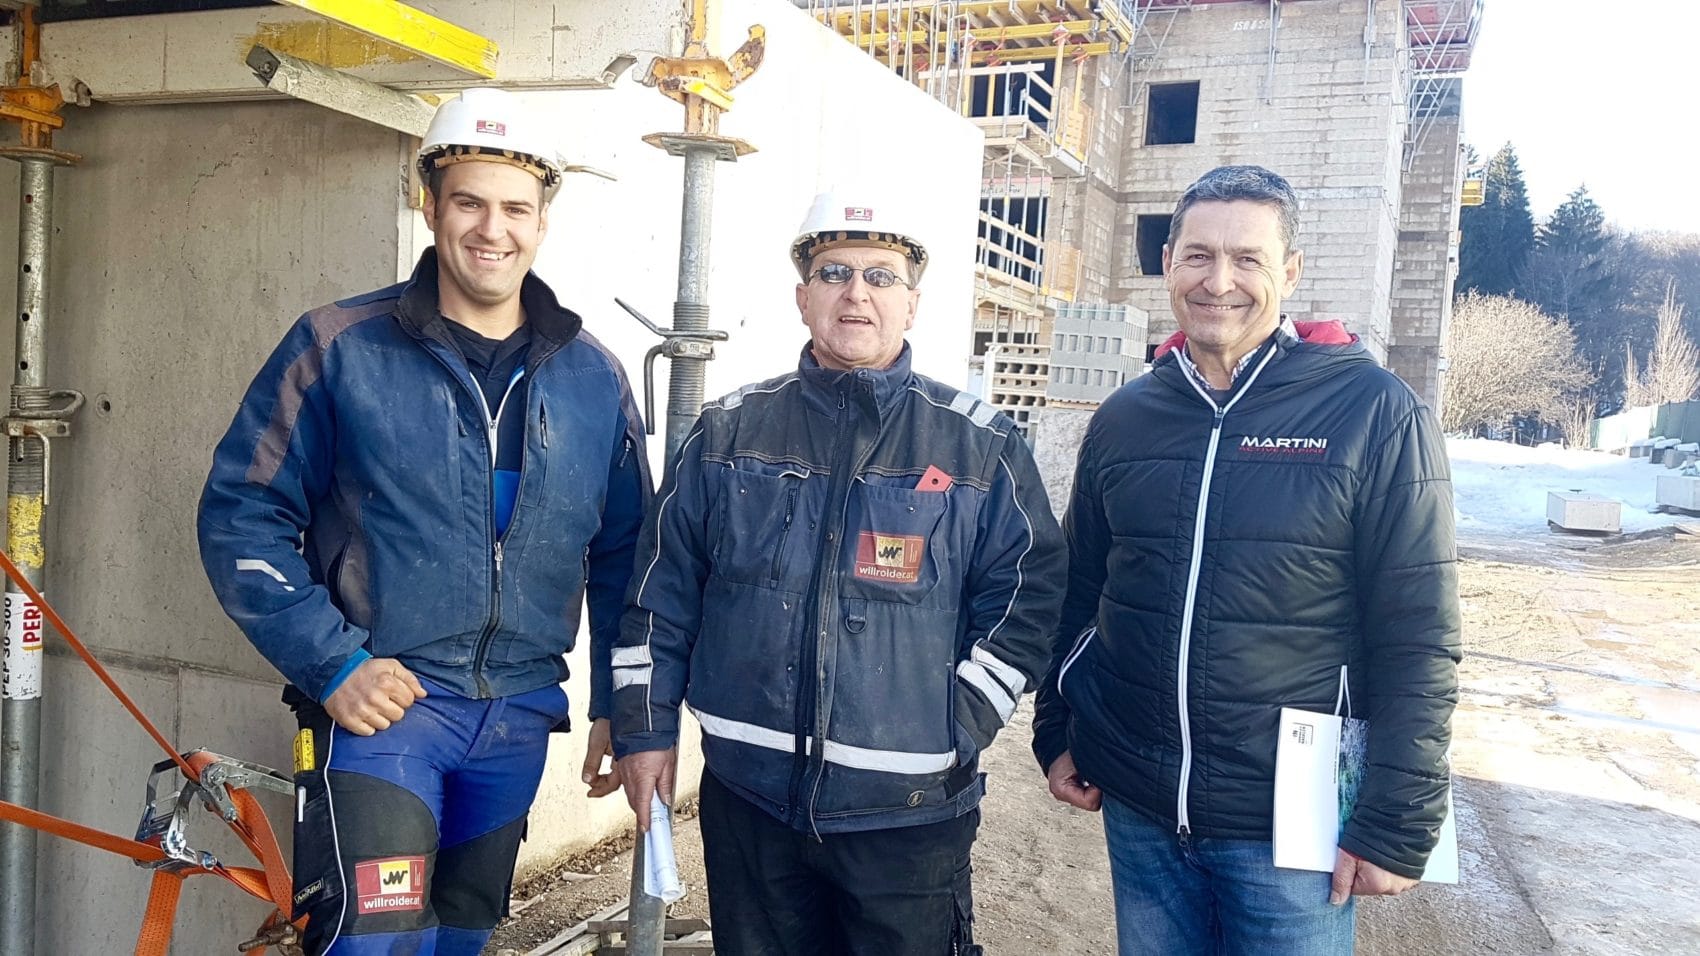 Baustellenbesuch bei den Profis von Willroider: Markus Frank, Wolfgang Schatzmayr und Josef Ram vor dem Bauobjekt 